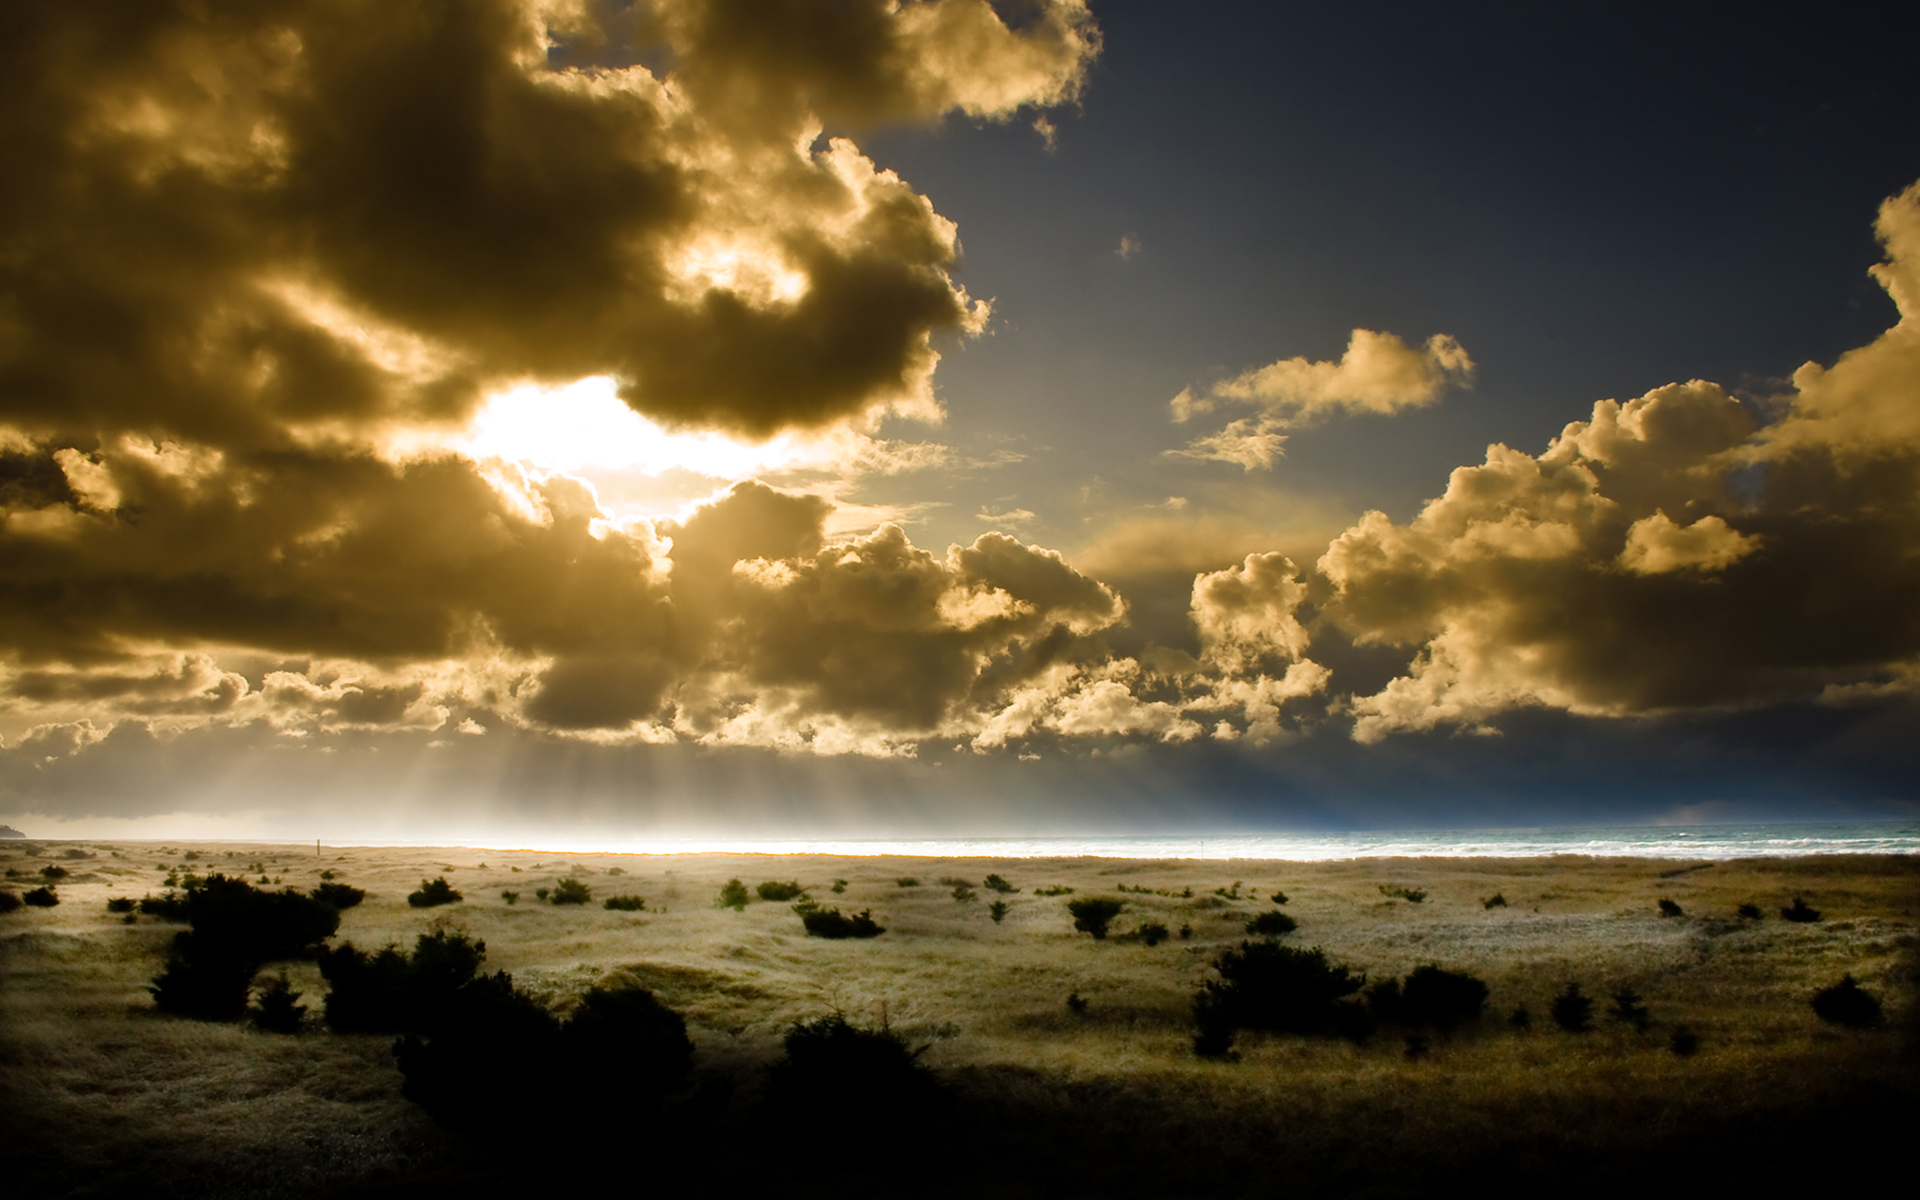 sunset, clouds, landscapes, nature - desktop wallpaper